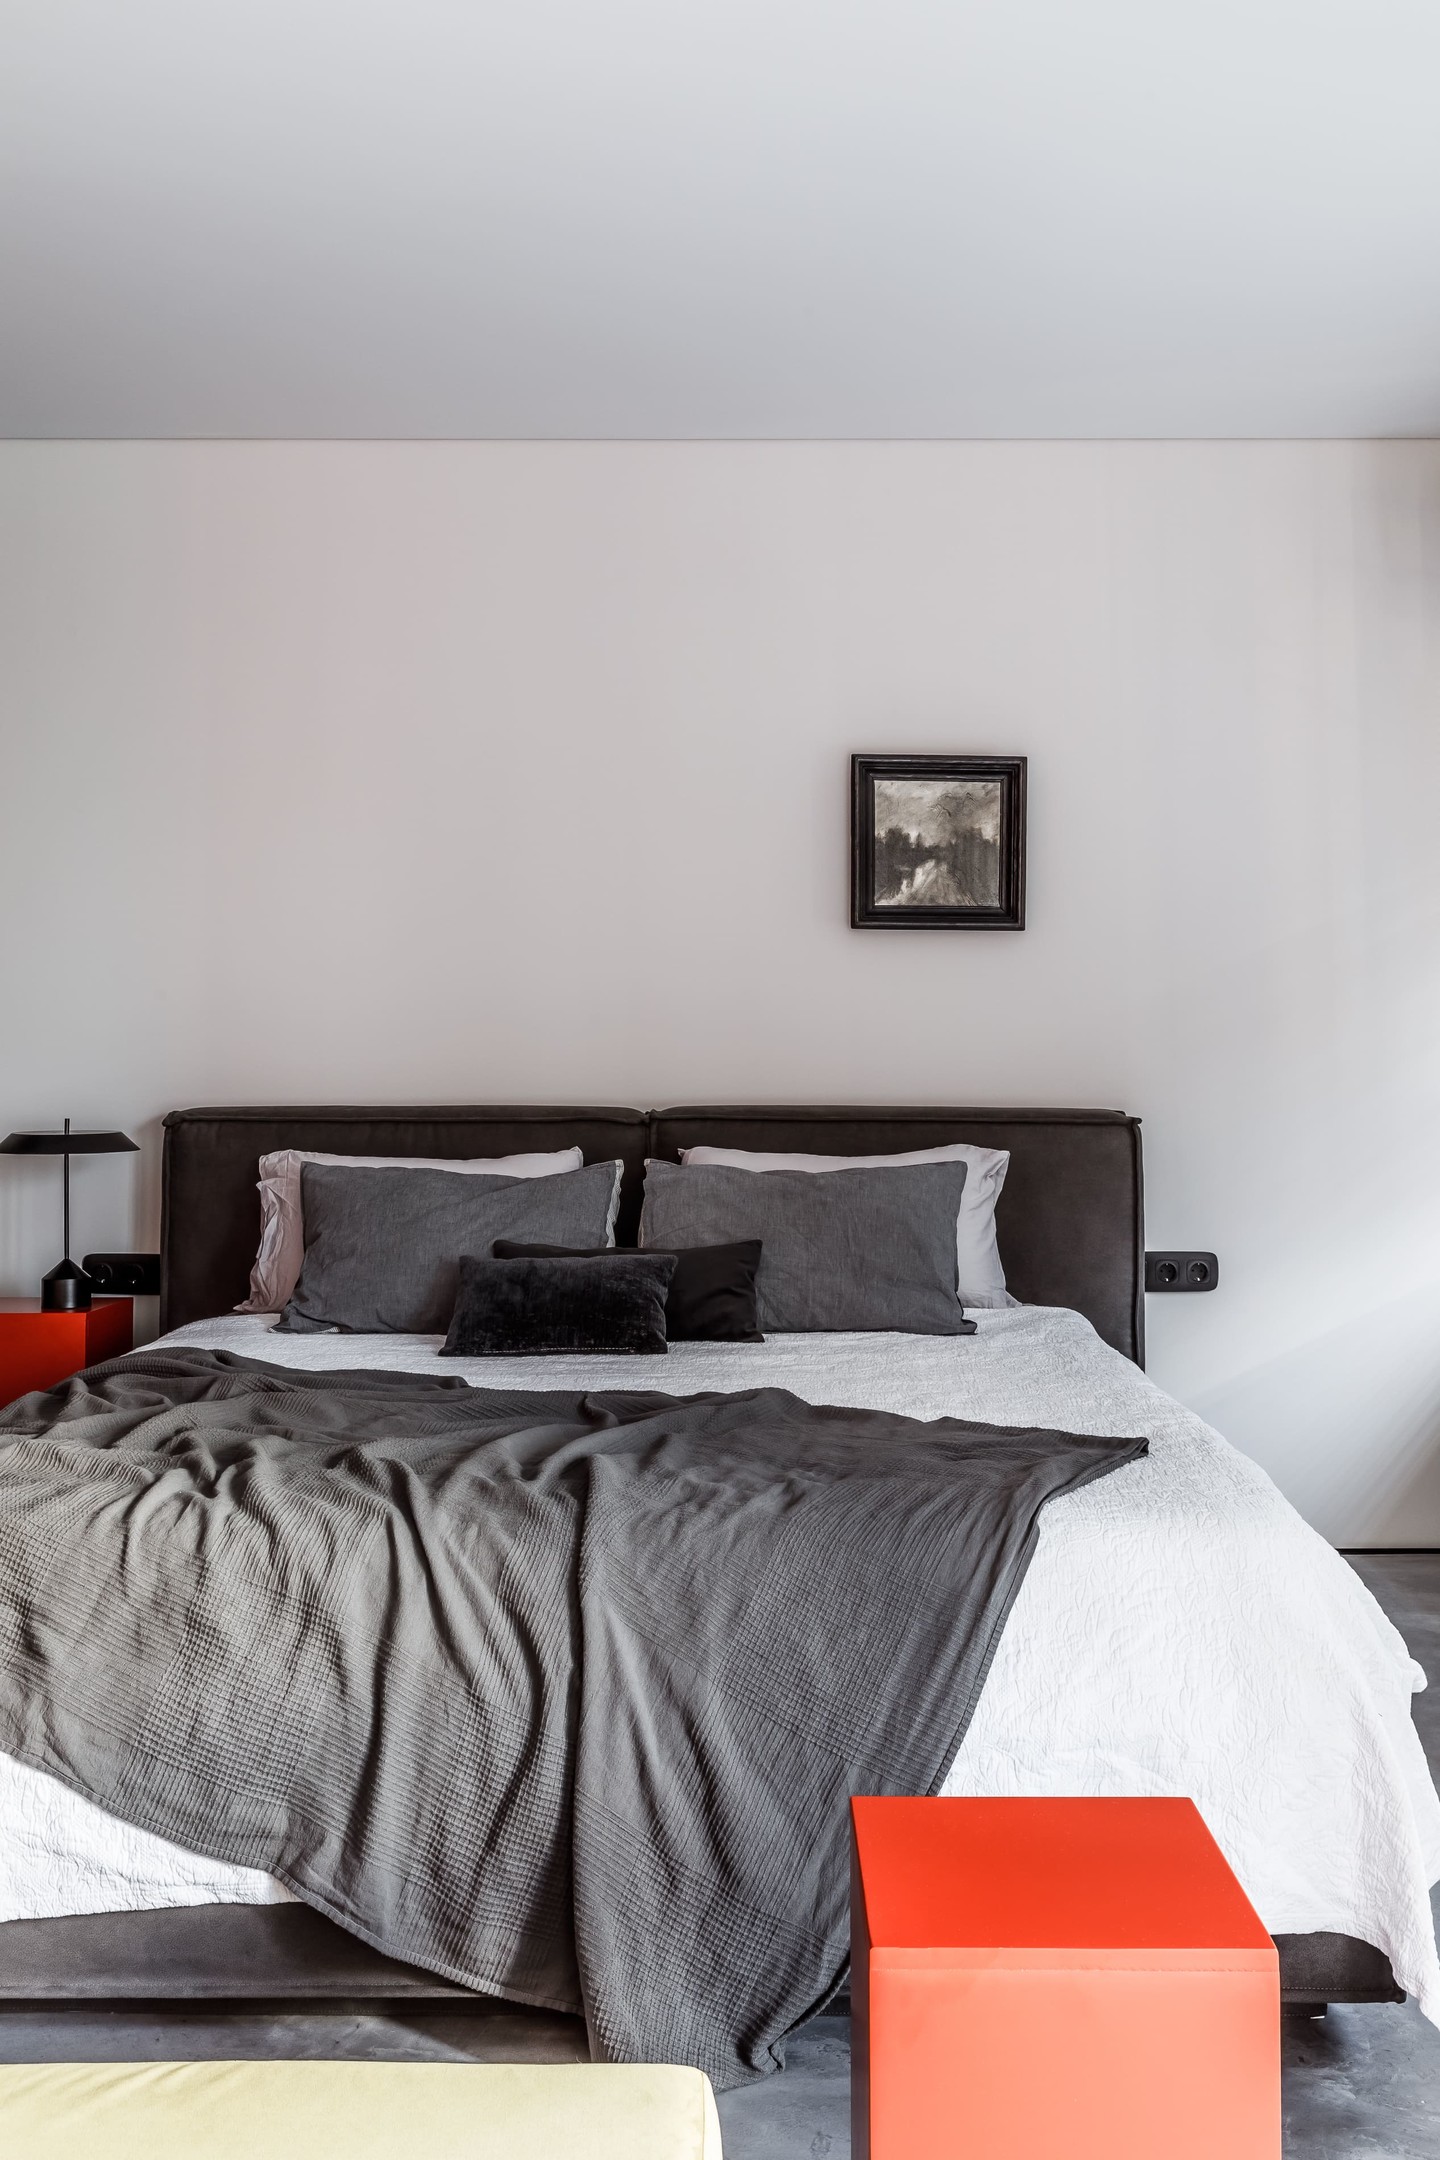 Phòng ngủ thiết kế tối giản từ màu sắc đến nội thất nhằm tạo sự thư giãn thoải mái, ít bị chi phối bởi nội thất cồng kềnh. Tone màu cơ bản vẫn sử dụng là trắng, xám, và sắc cam sáng bừng của ghế ngồi và táp đầu giường.